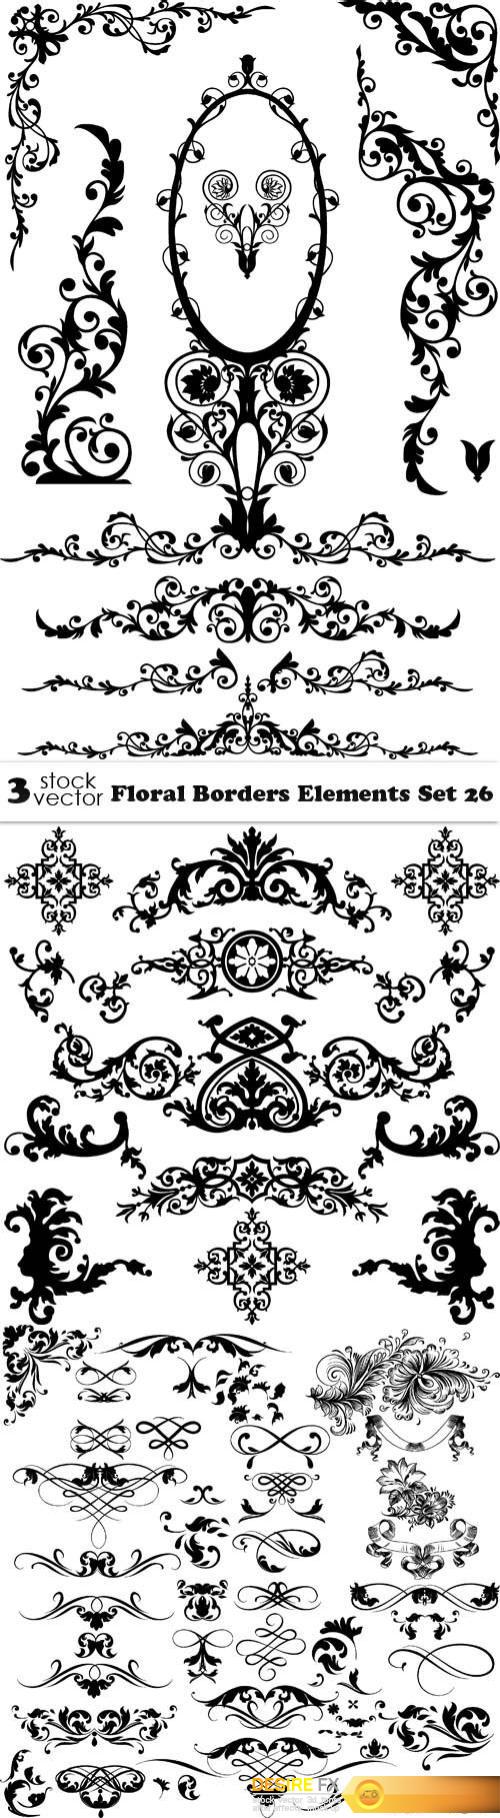 Vectors - Floral Borders Elements Set 26